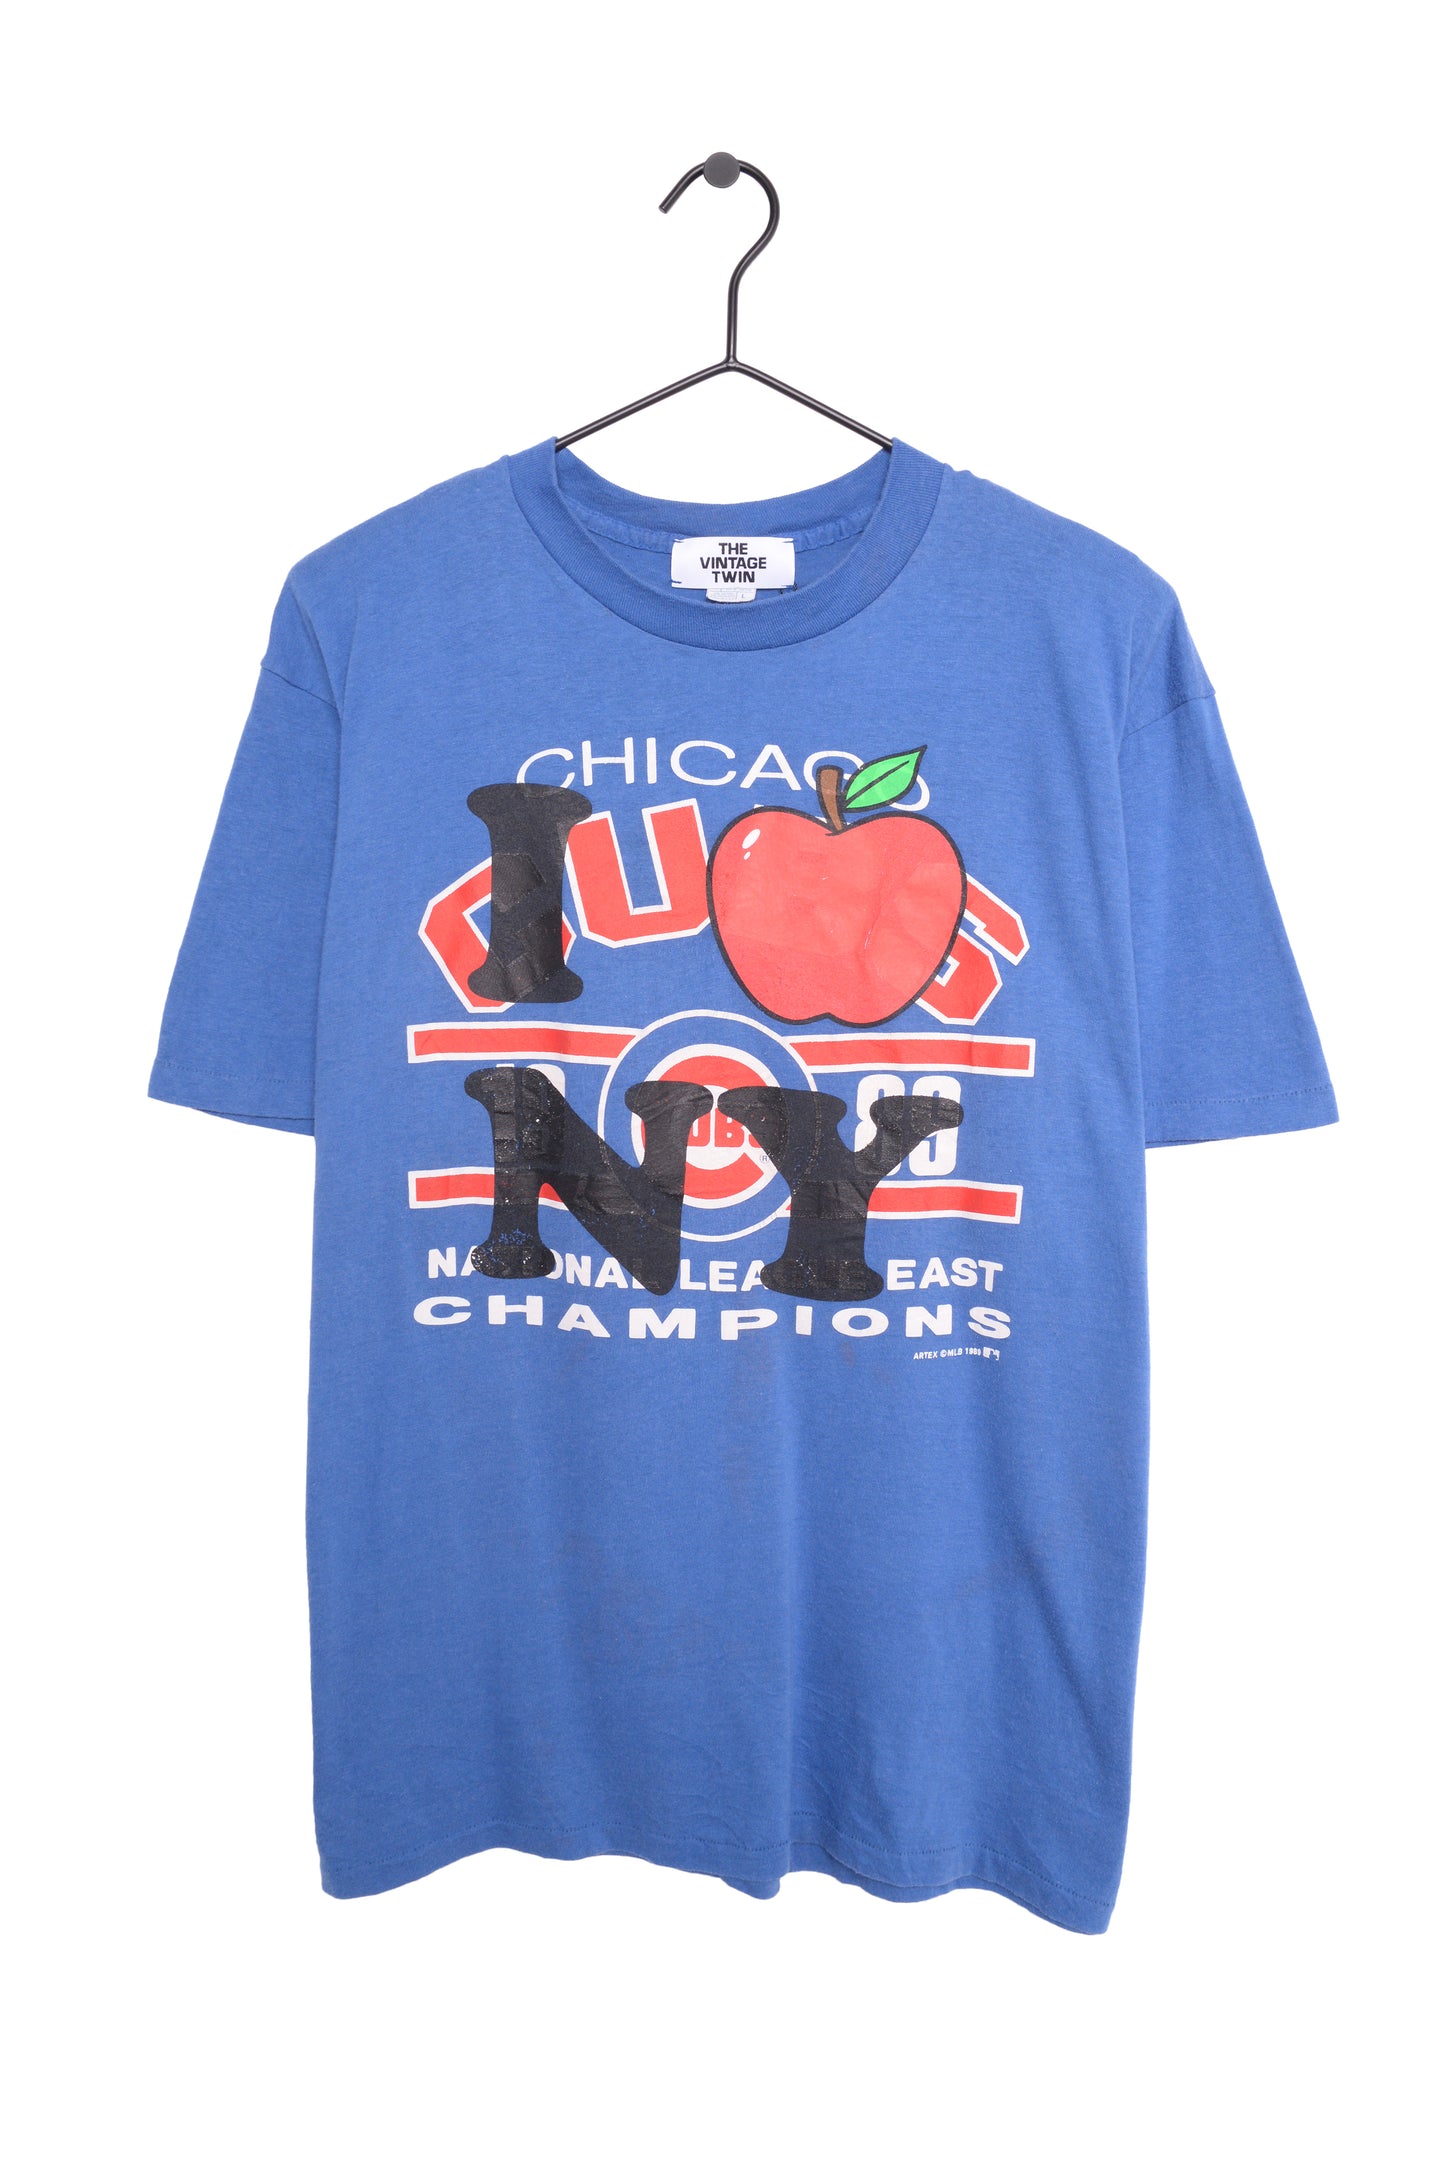 1989 Chicago Cubs I Heart NY Tee